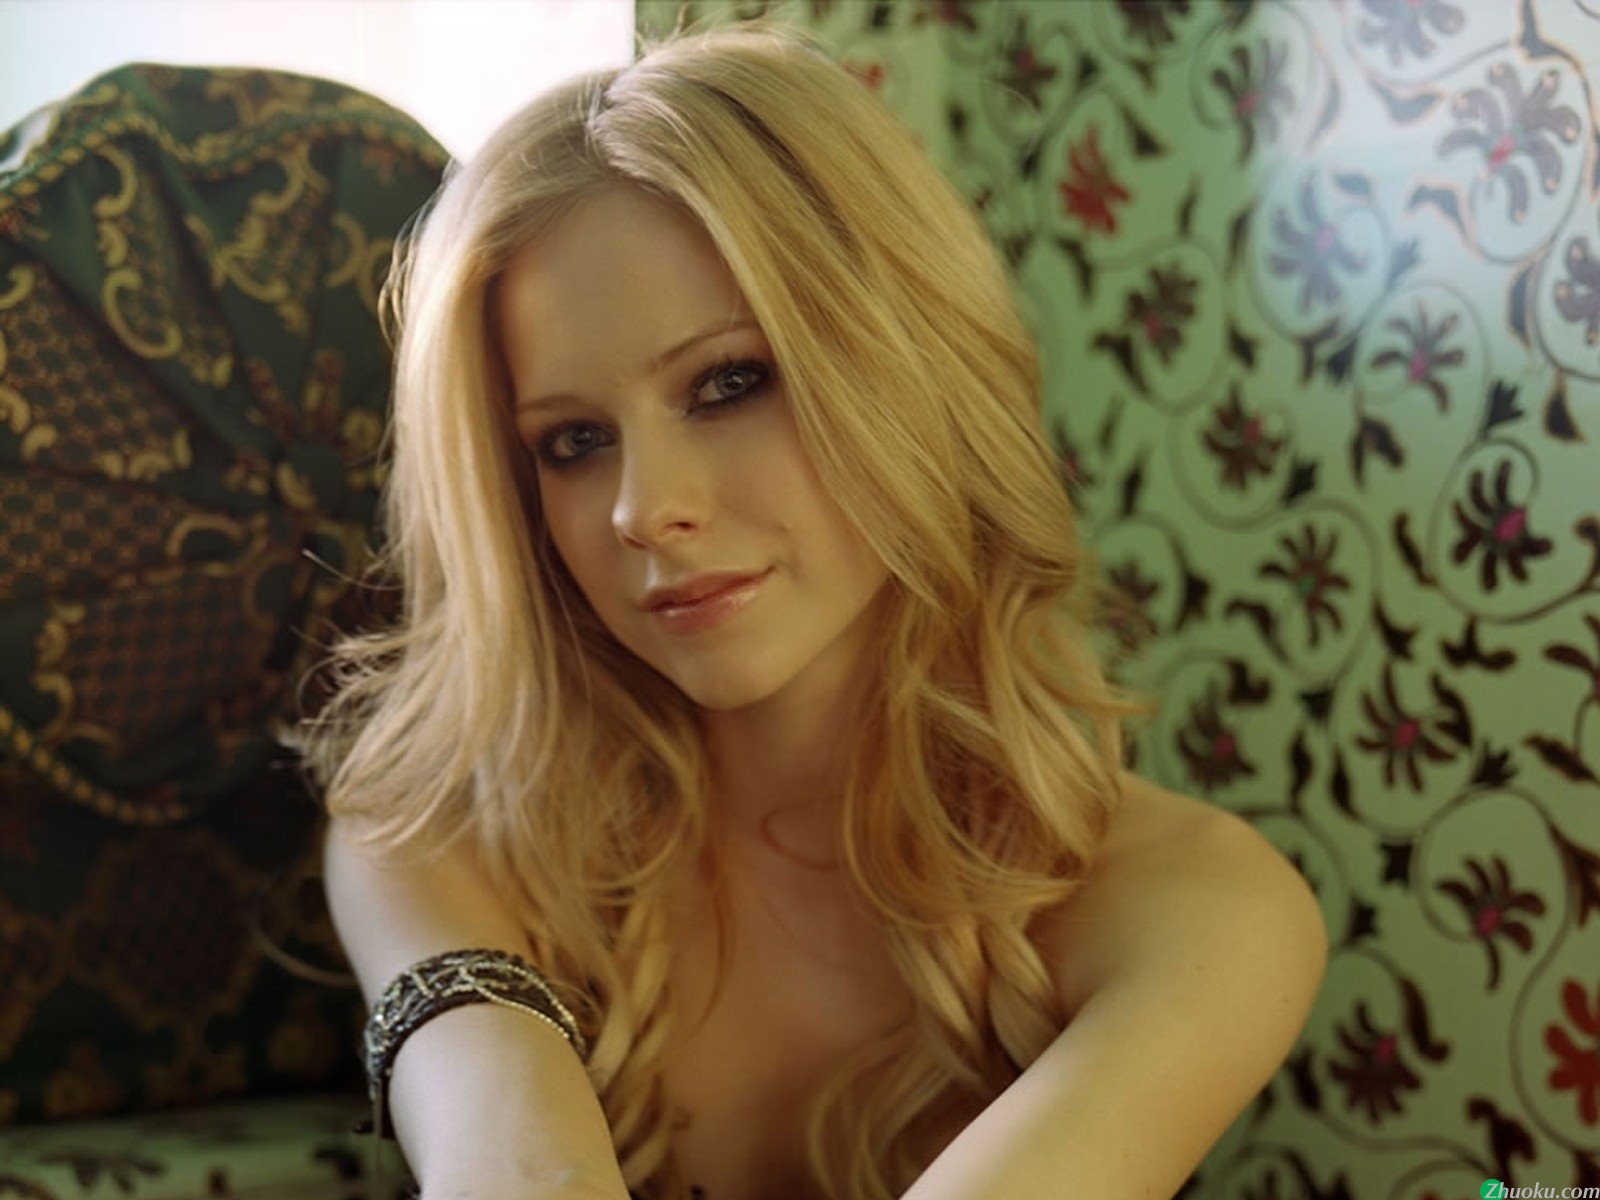 壁纸1600x1200艾薇儿 Avril Lavigne 壁纸116壁纸 艾薇儿 Avril Lavigne壁纸 艾薇儿 Avril Lavigne图片 艾薇儿 Avril Lavigne素材 明星壁纸 明星图库 明星图片素材桌面壁纸